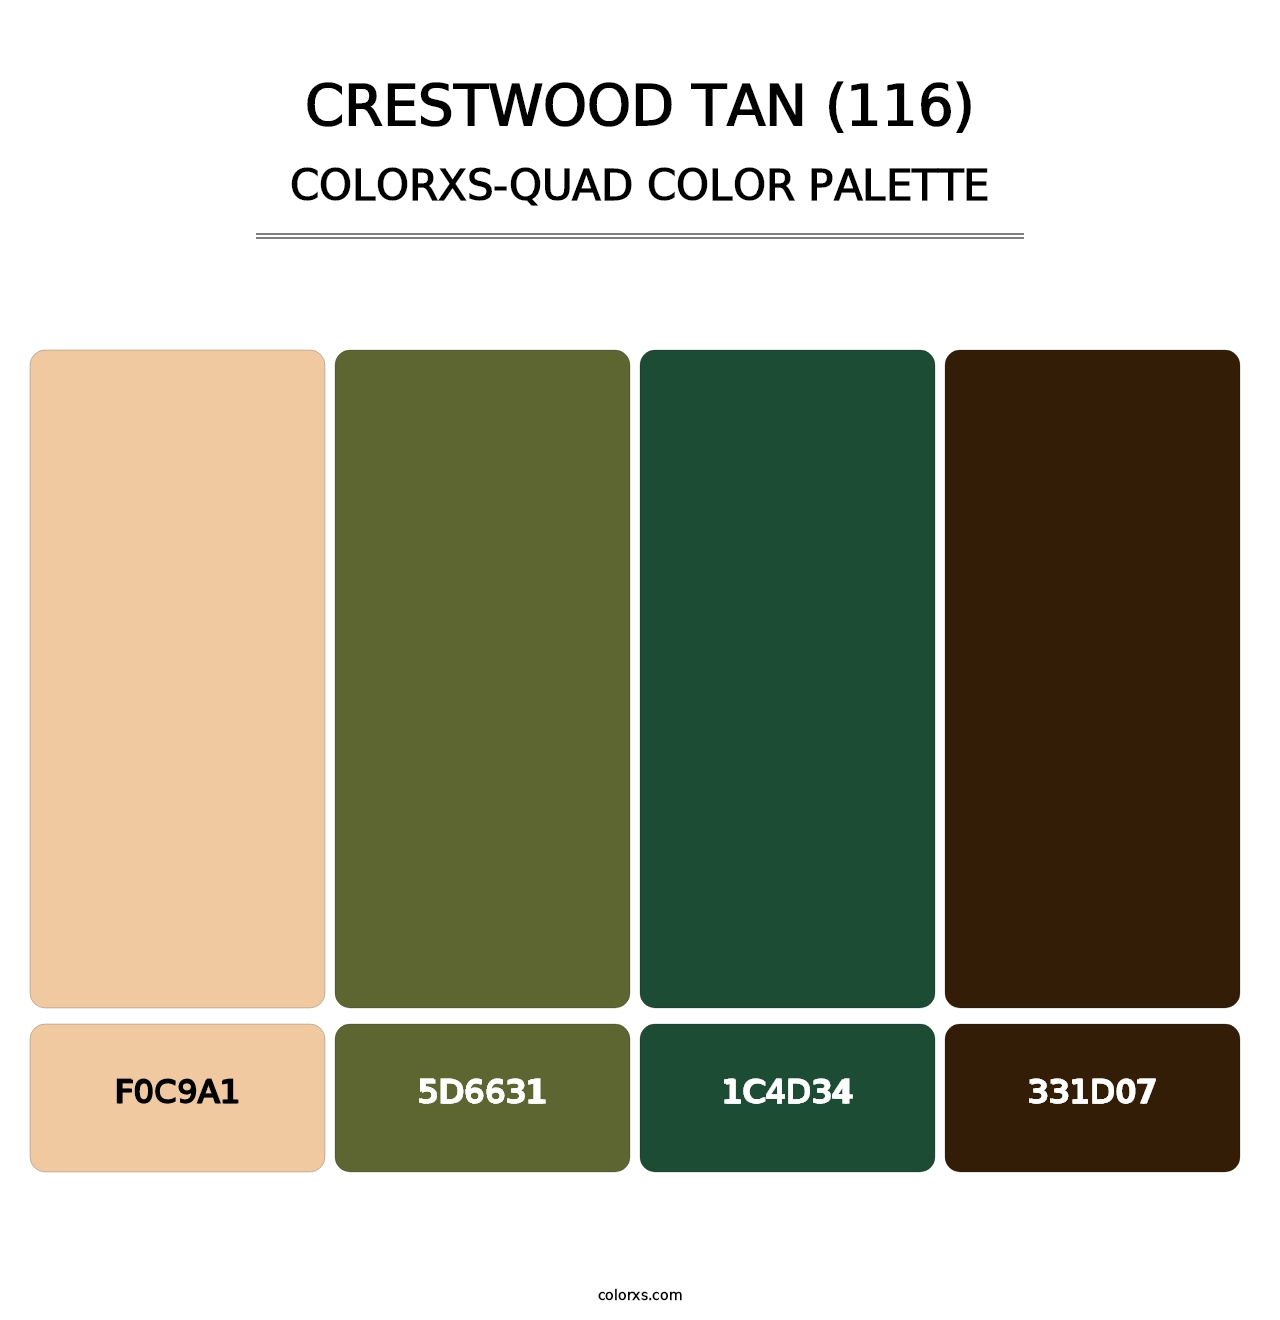 Crestwood Tan (116) - Colorxs Quad Palette